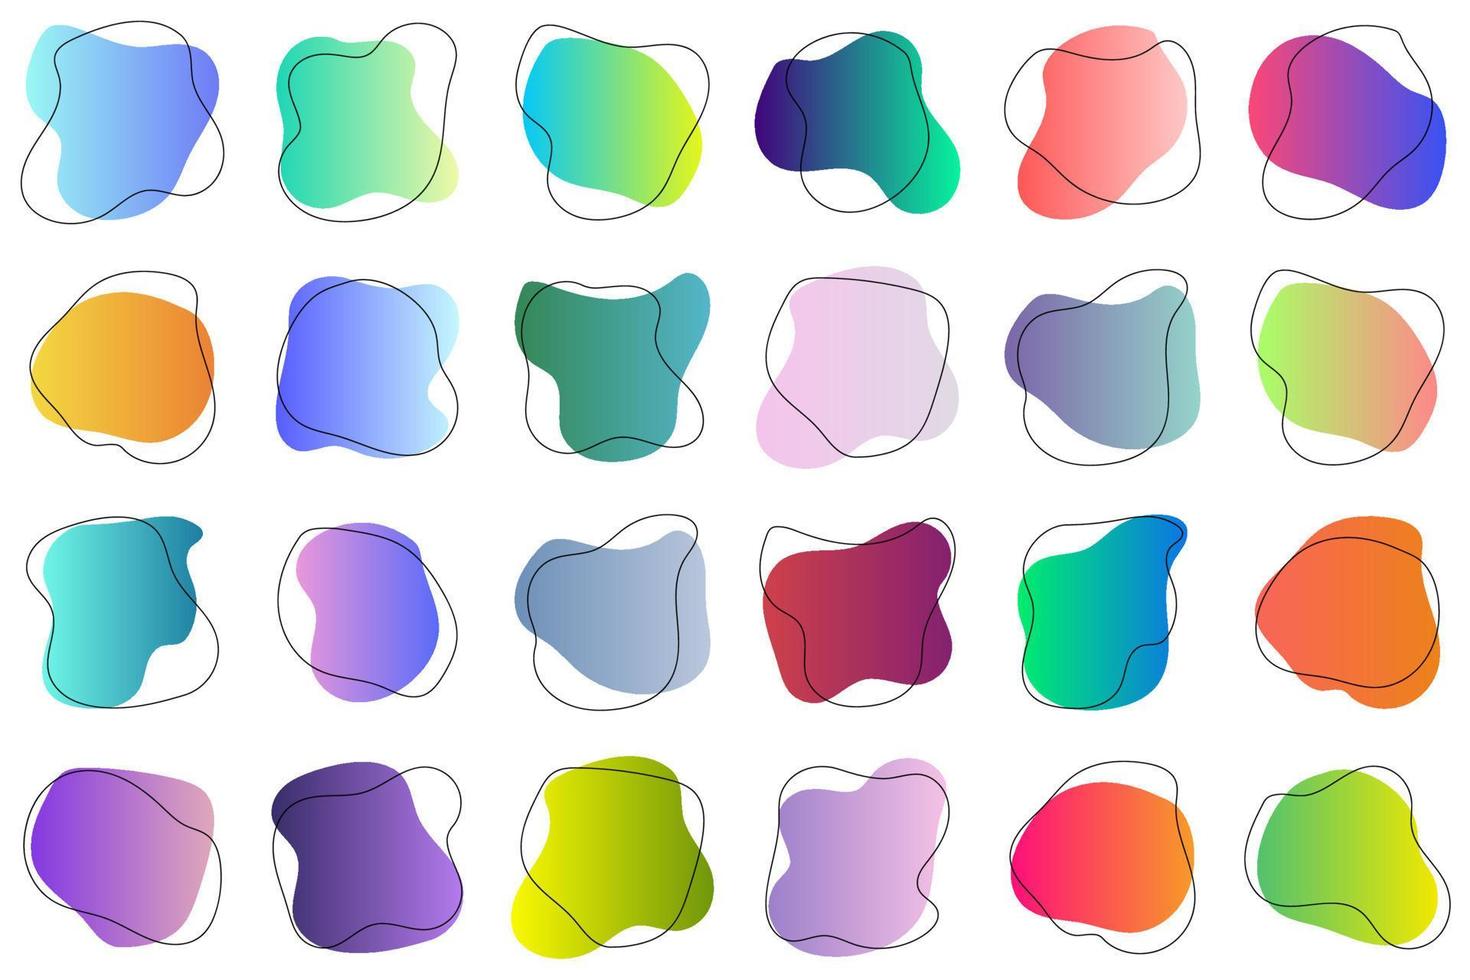 conjunto de elementos de diseño gráfico abstracto. colección de manchas aleatorias coloridas dibujadas a mano. formas redondeadas simples con gradientes de moda. ilustración vectorial vector